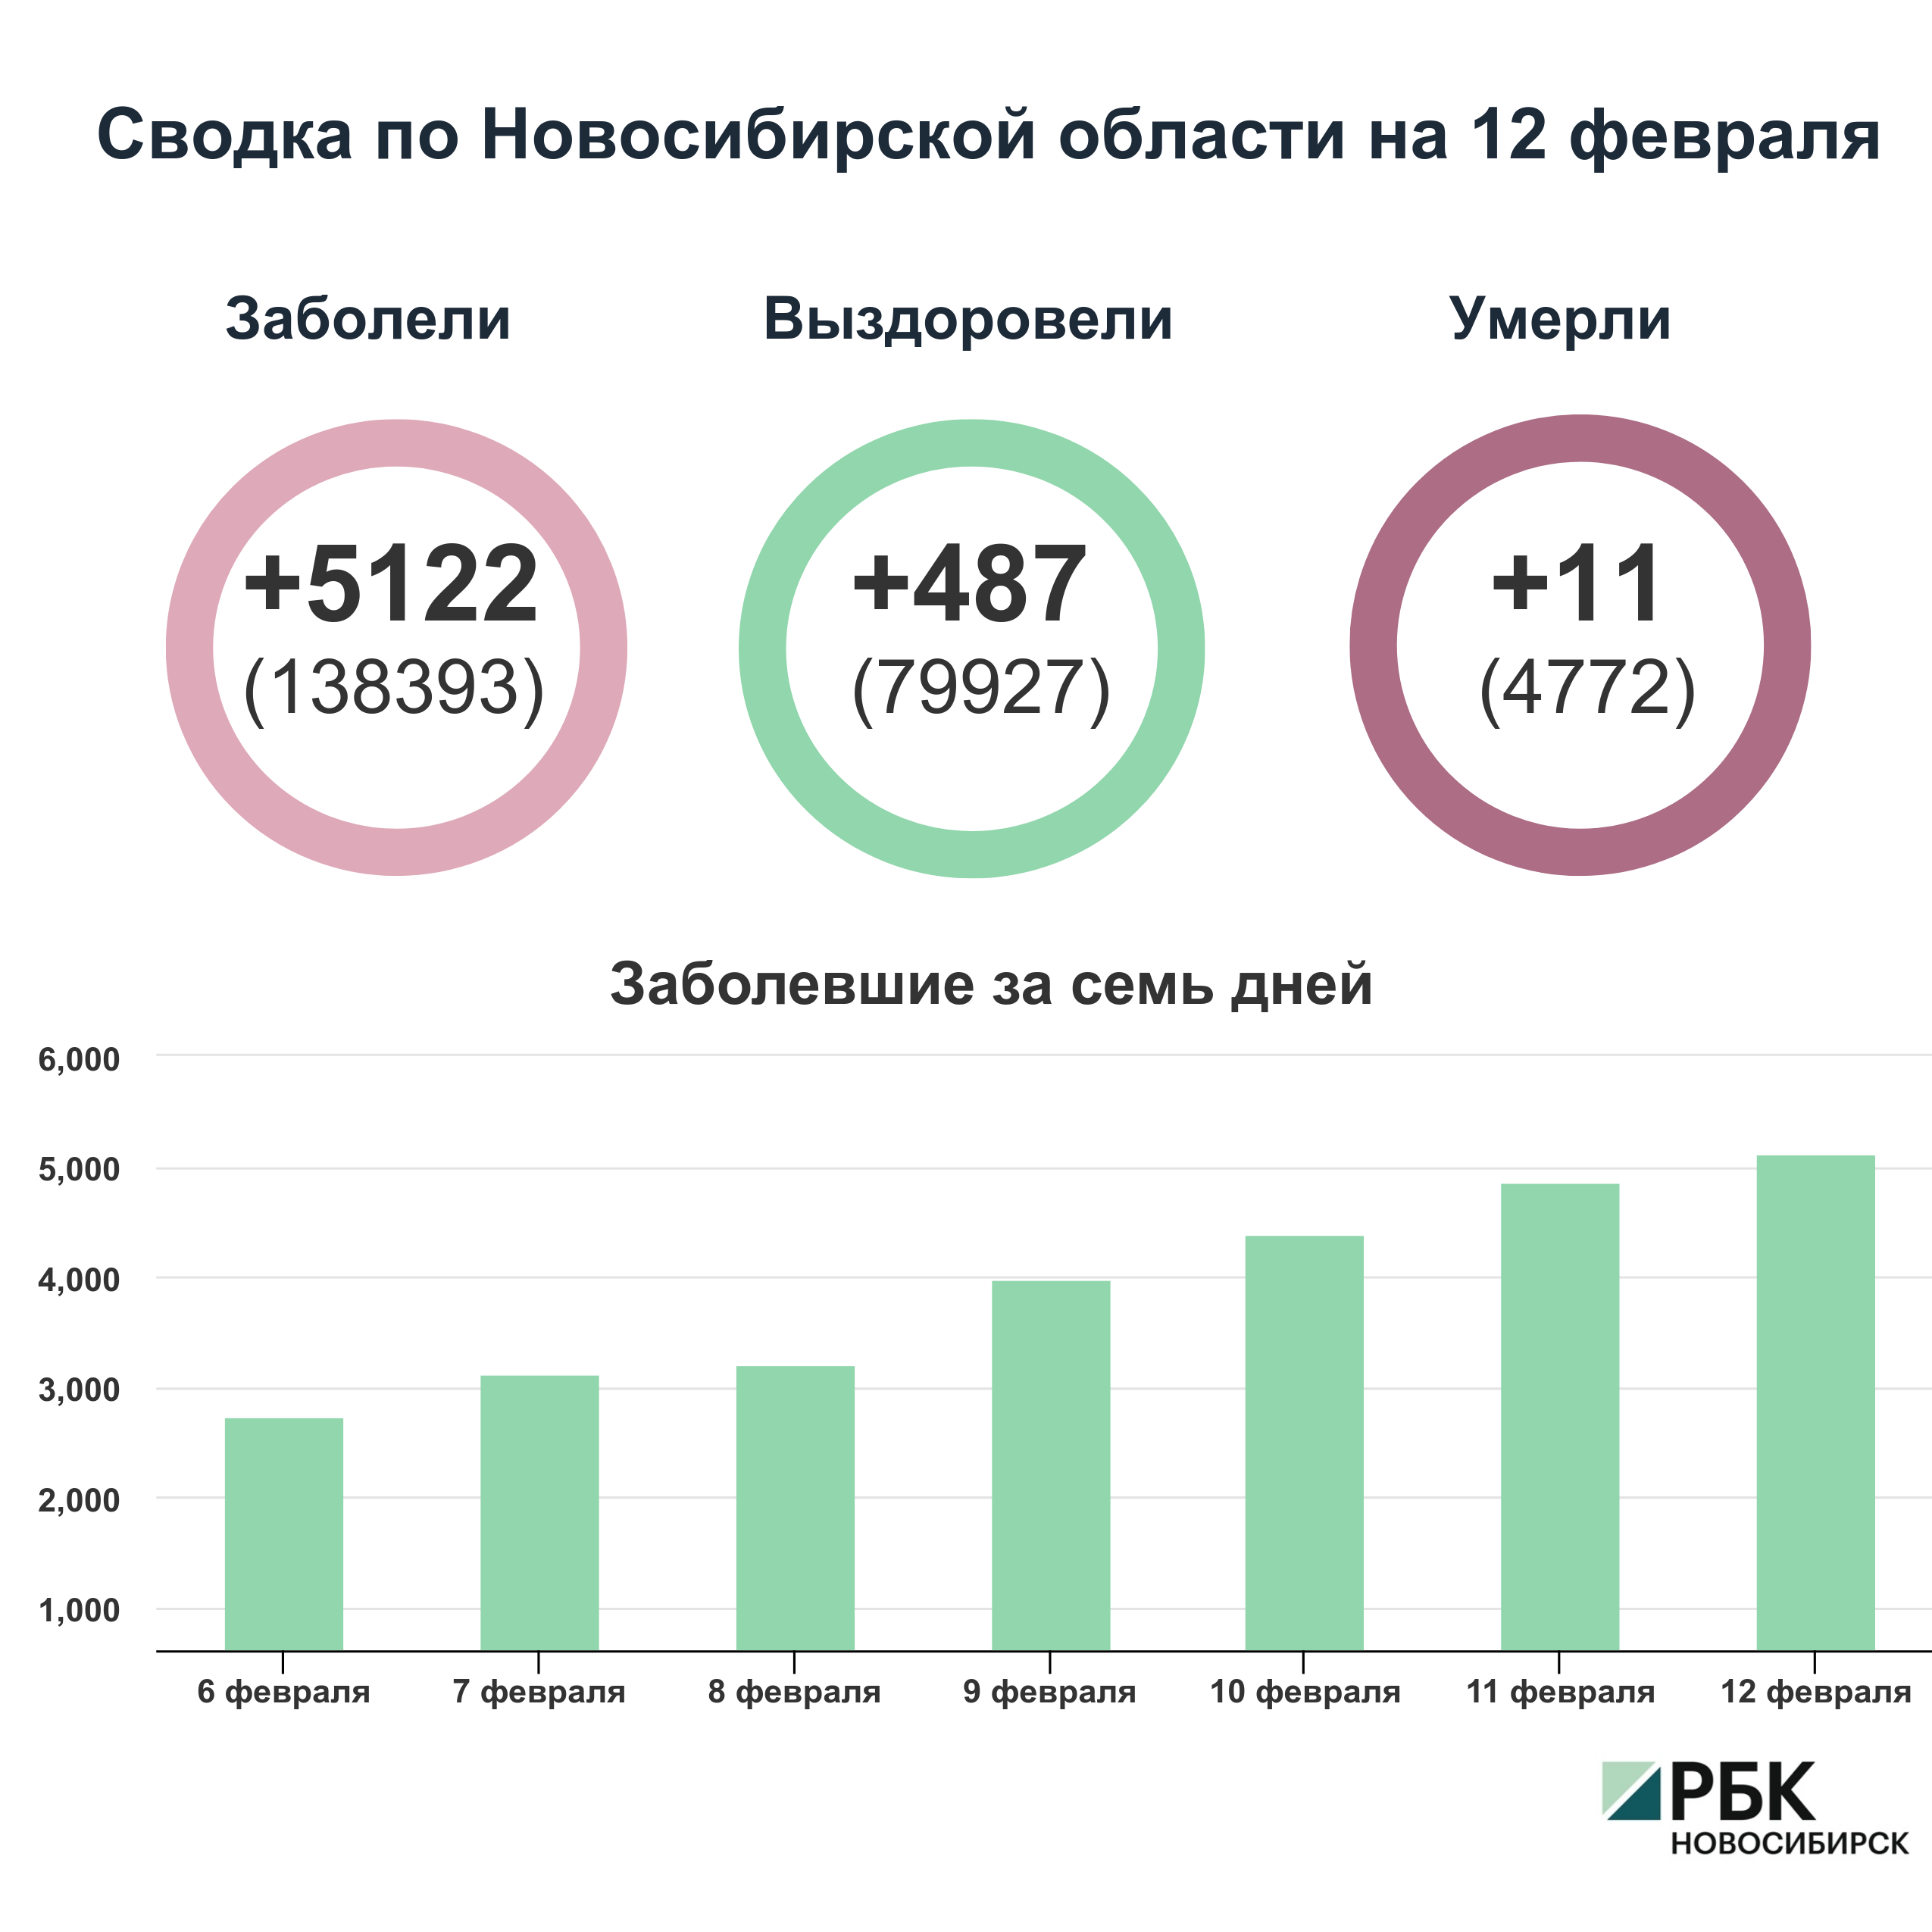 Коронавирус в Новосибирске: сводка на 12 февраля